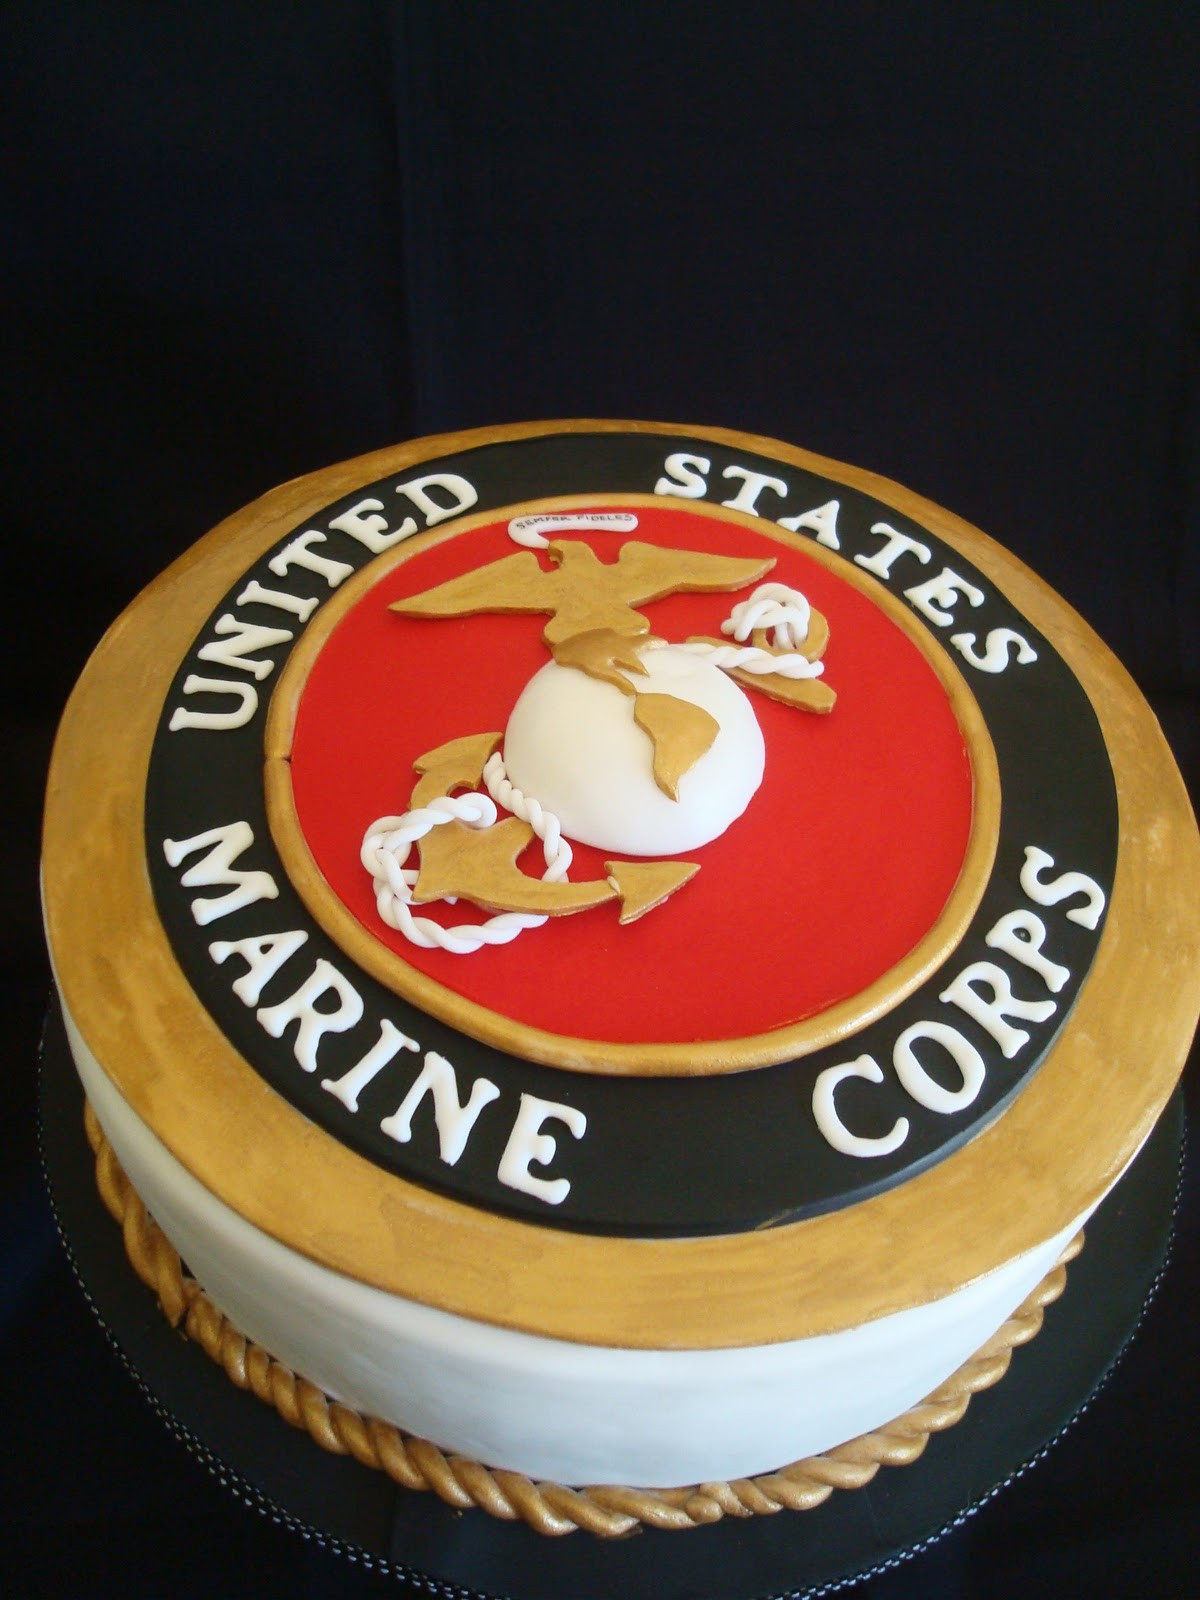 Marine Corps Birthday Cake
 My Pink Little Cake Marine Corps Groom cake